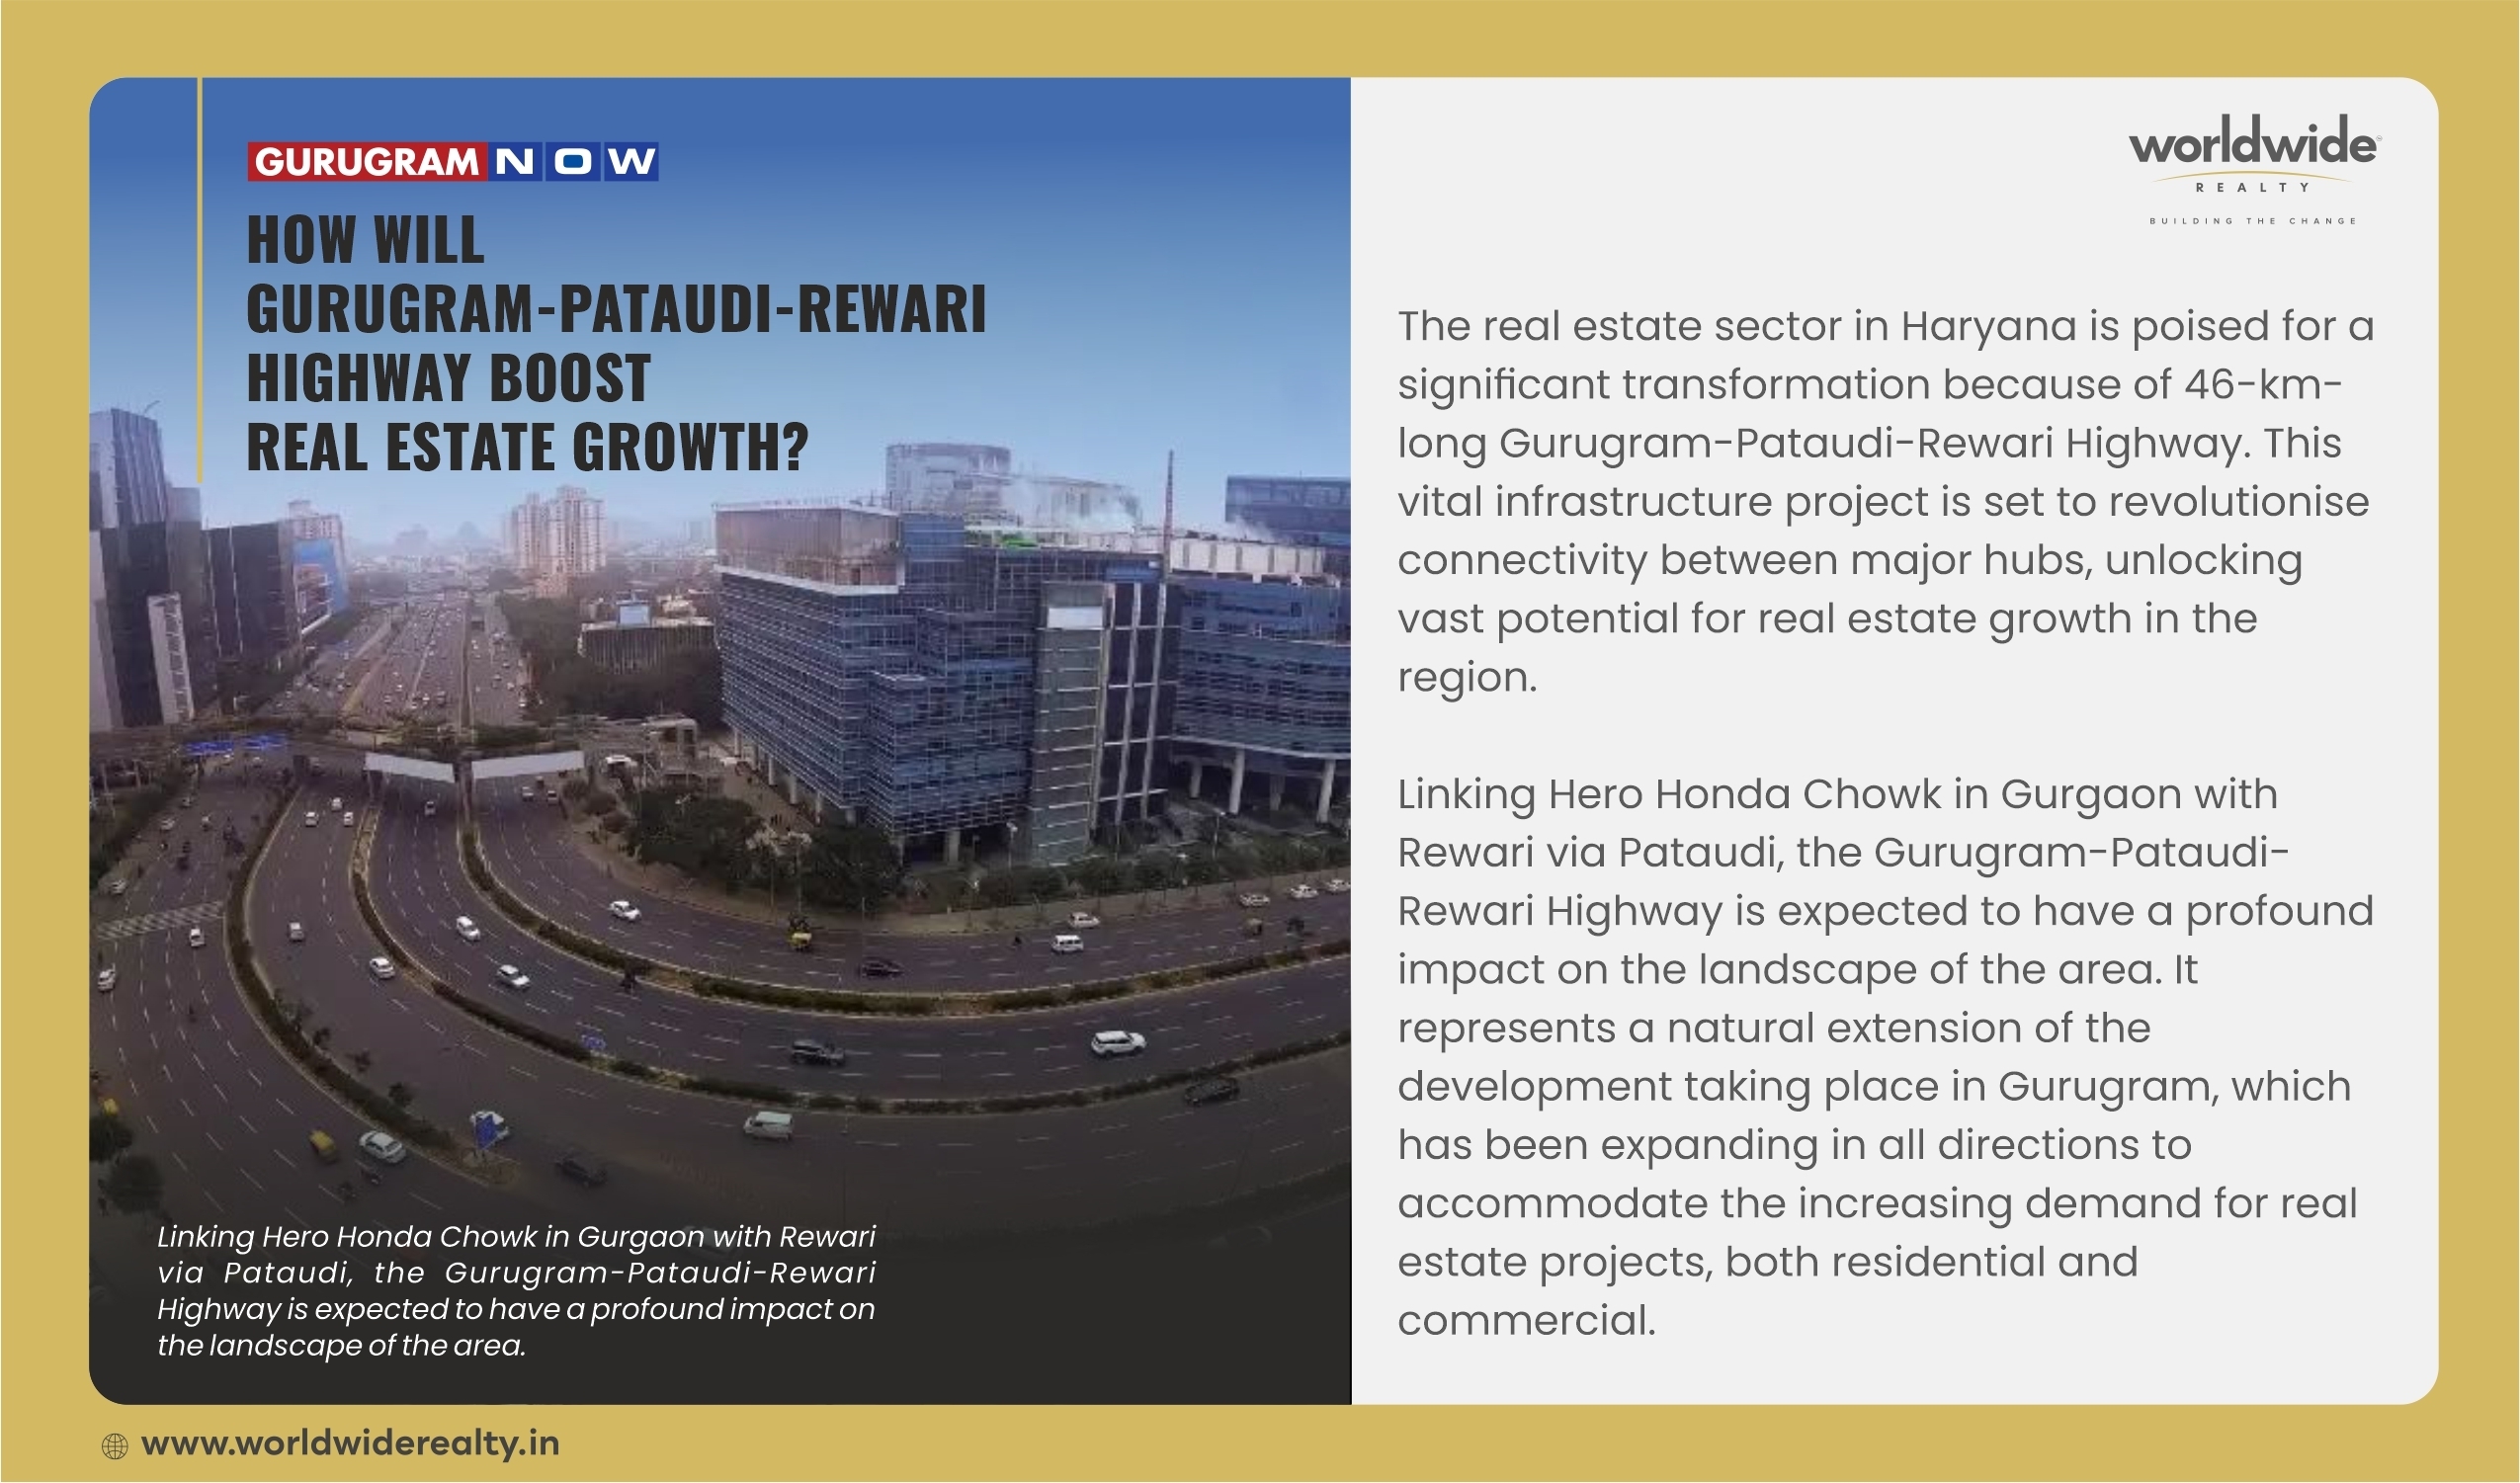 How will Gururgam-Pataudi-Rewari Highway Boost Real-Estate growth?